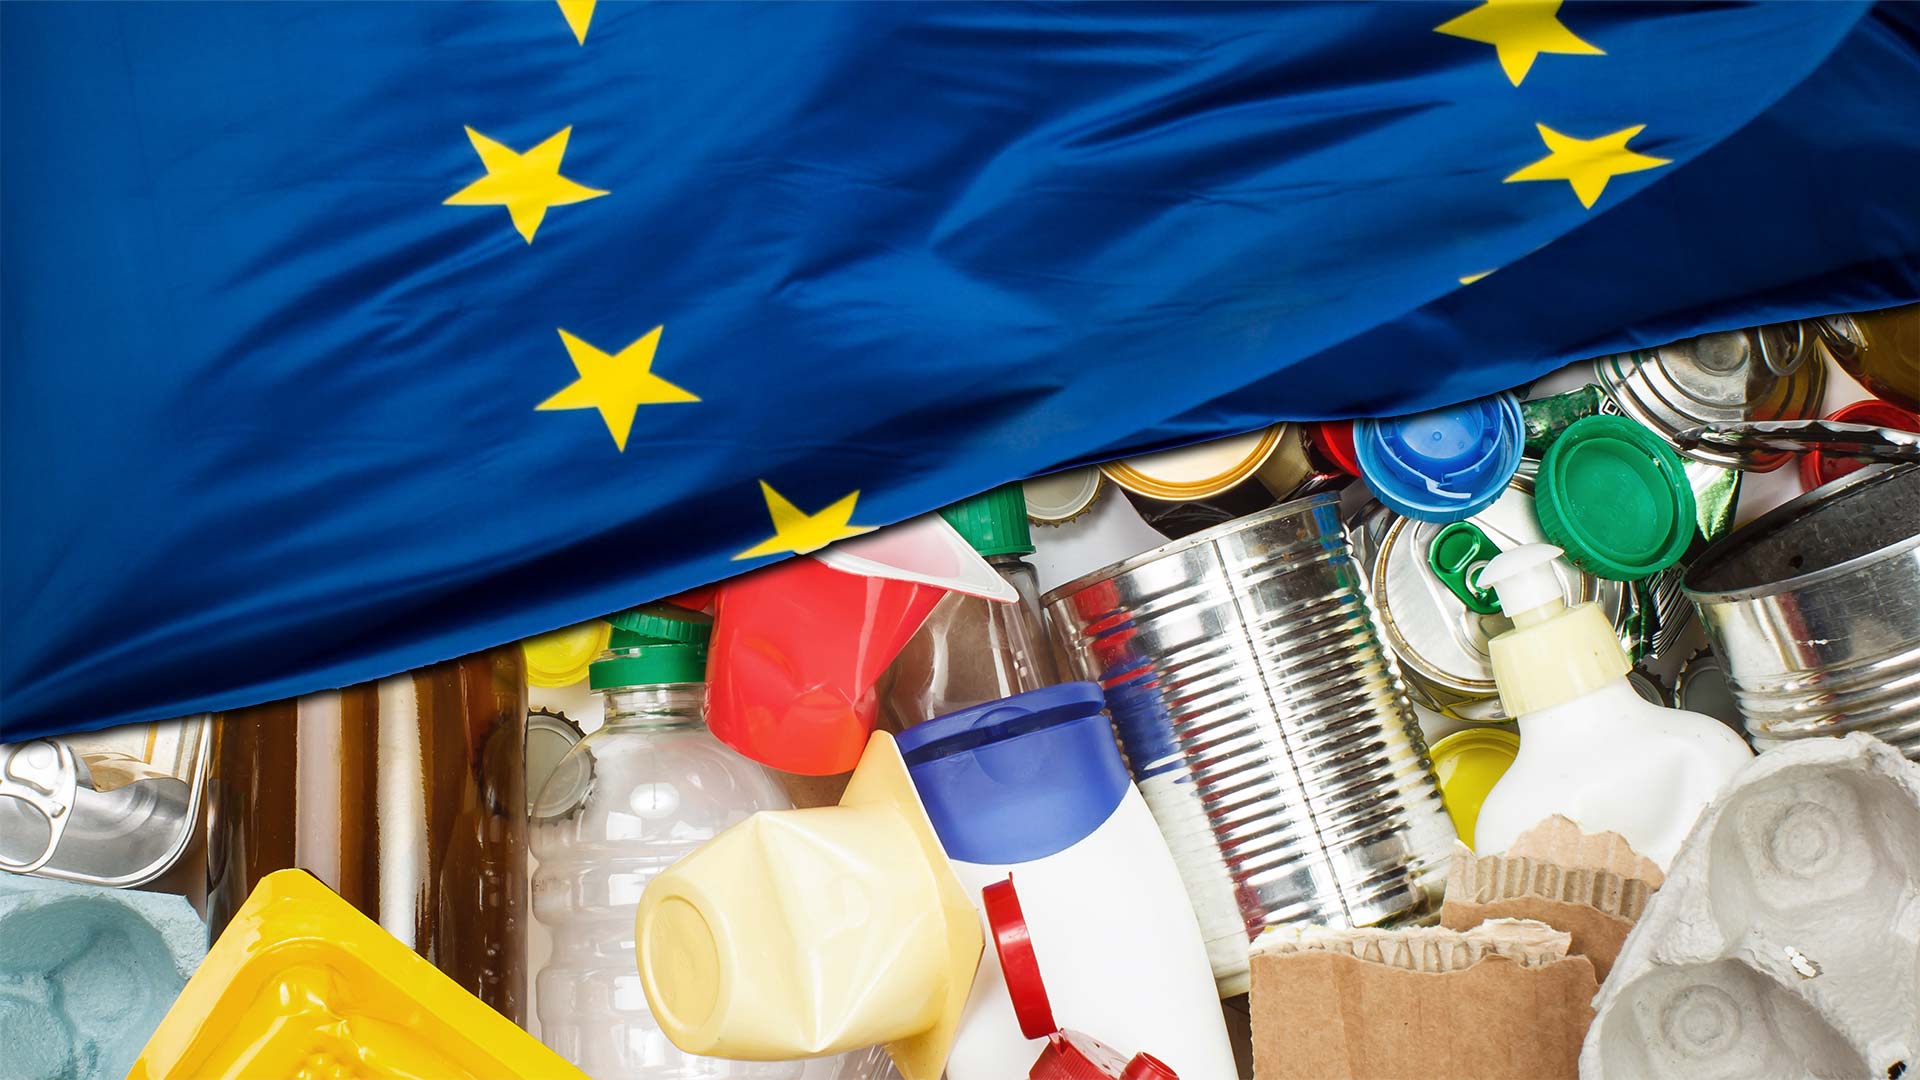 Vorläufige Einigung auf wesentliche Kompromisse für eine Europäische Verpackungsverordnung